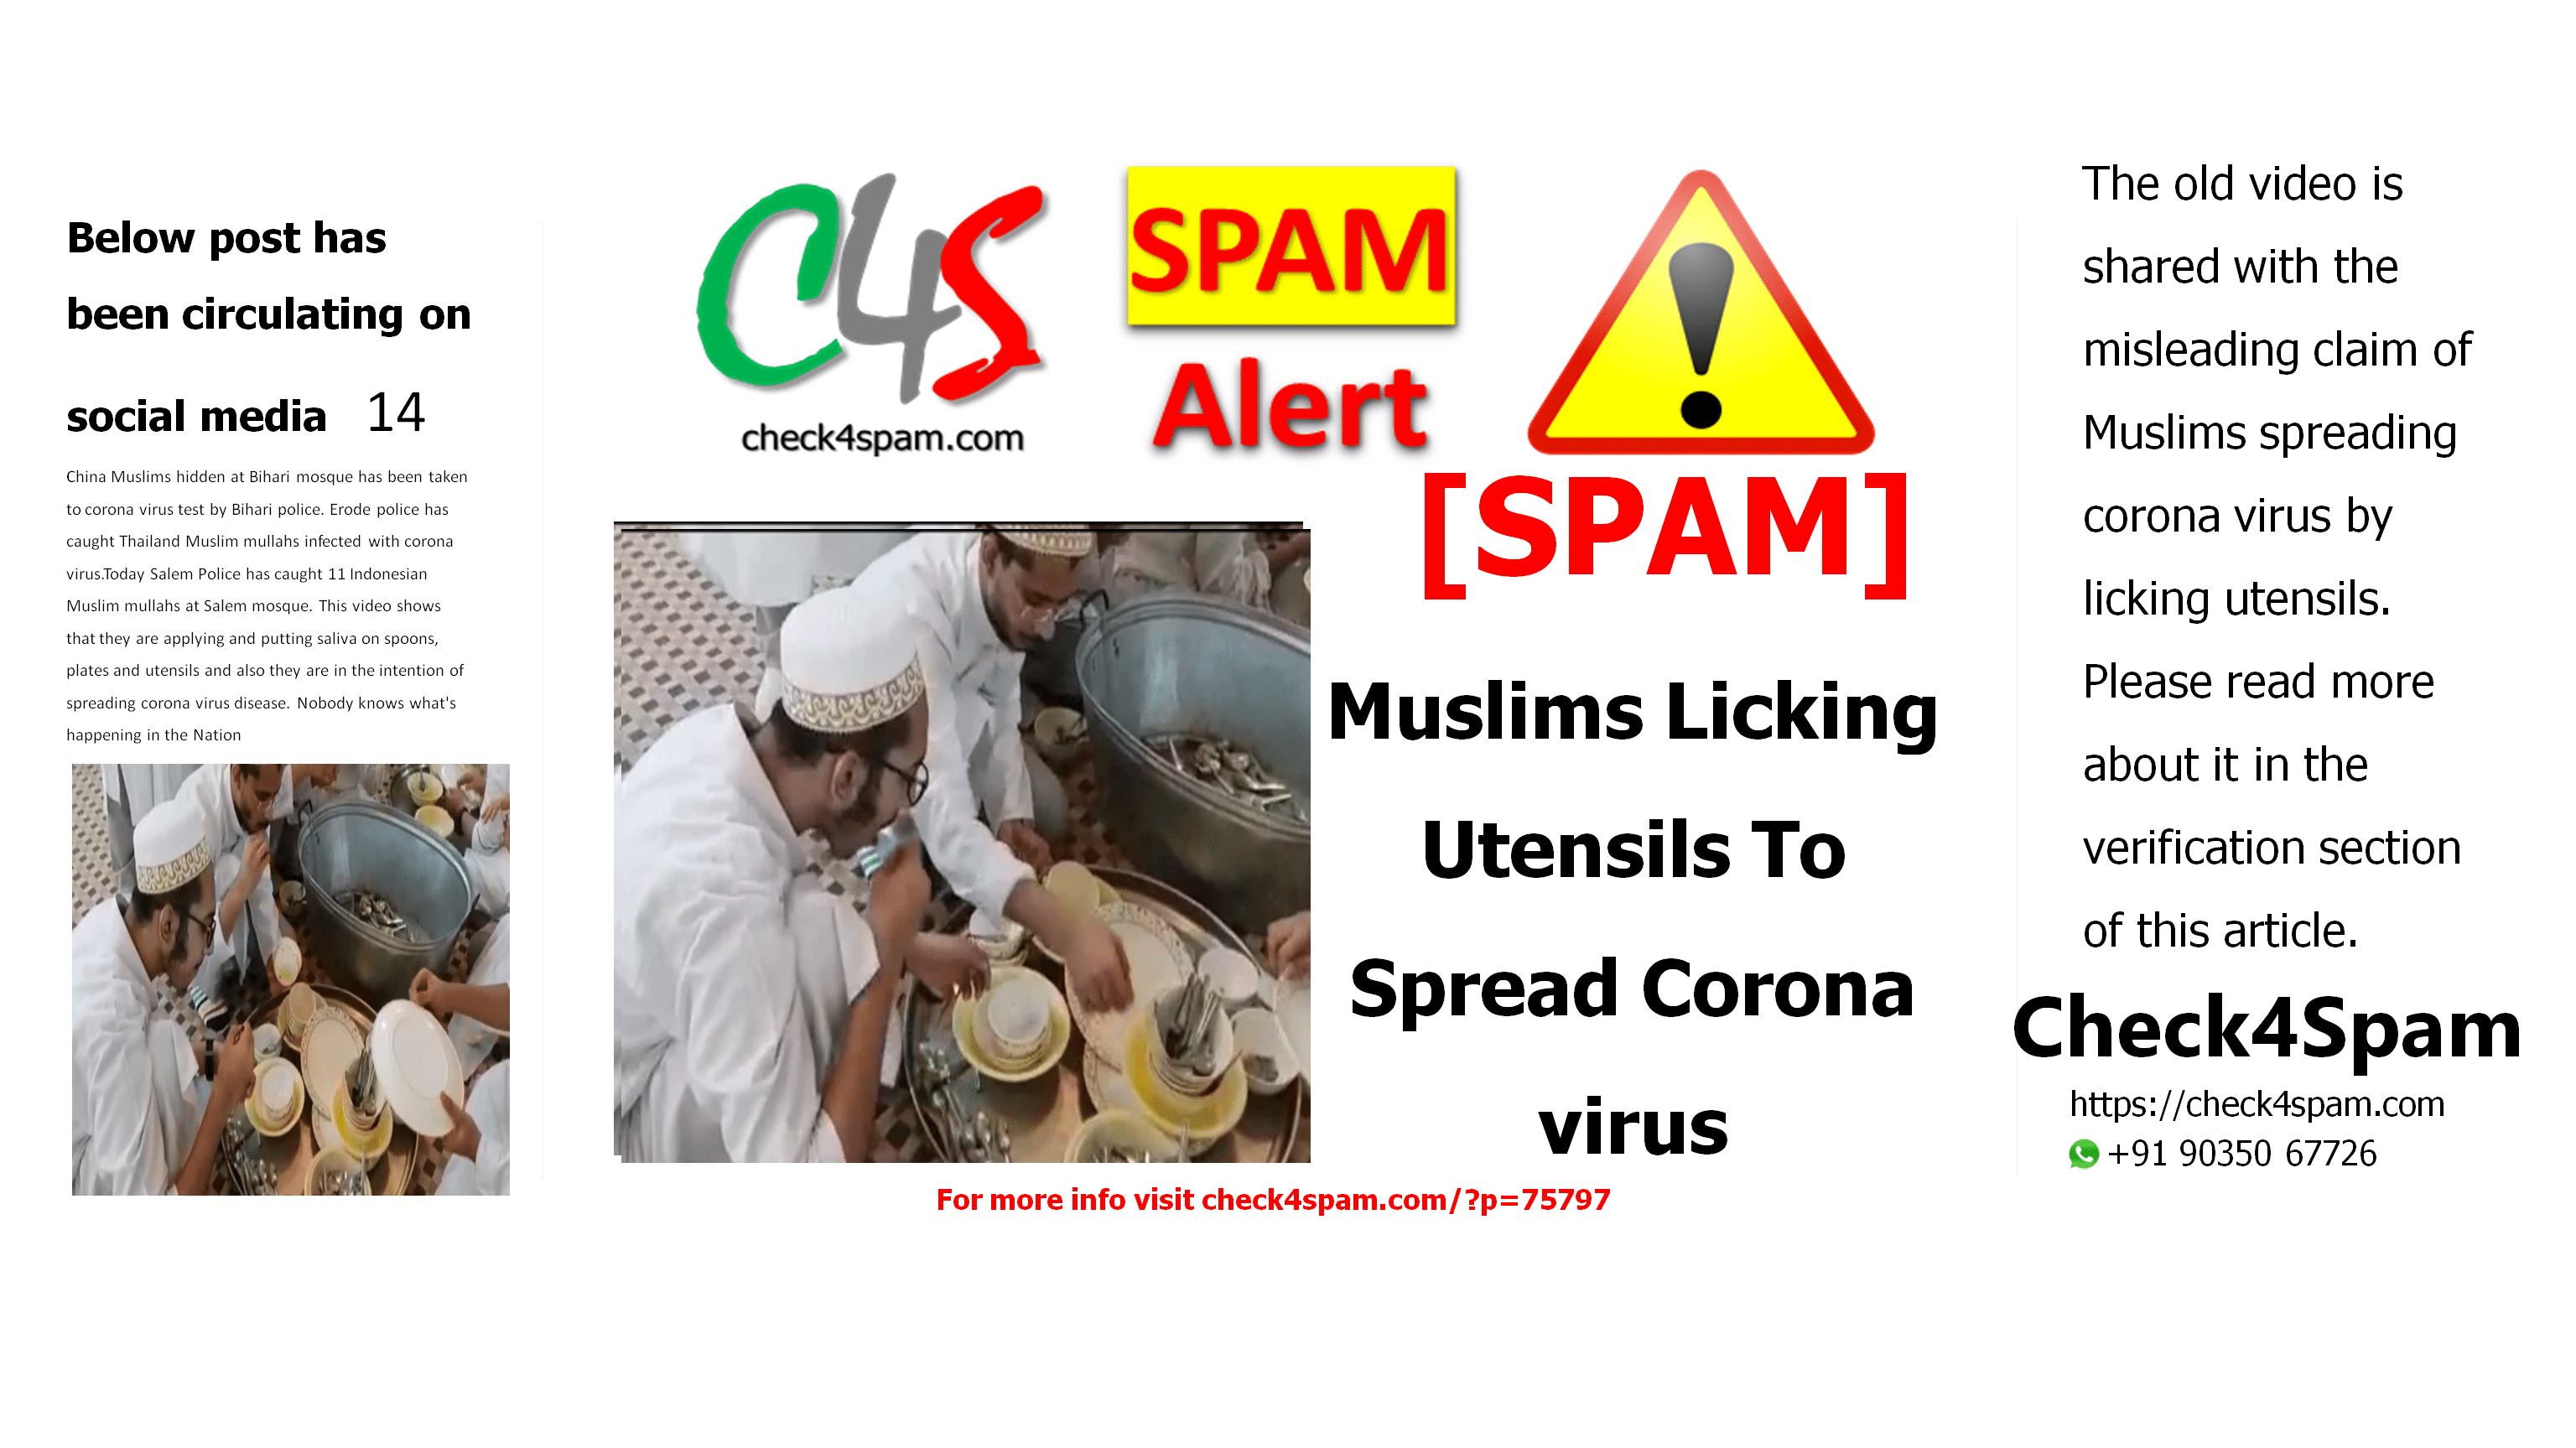 Muslims Licking Utensils To Spread Coronavirus